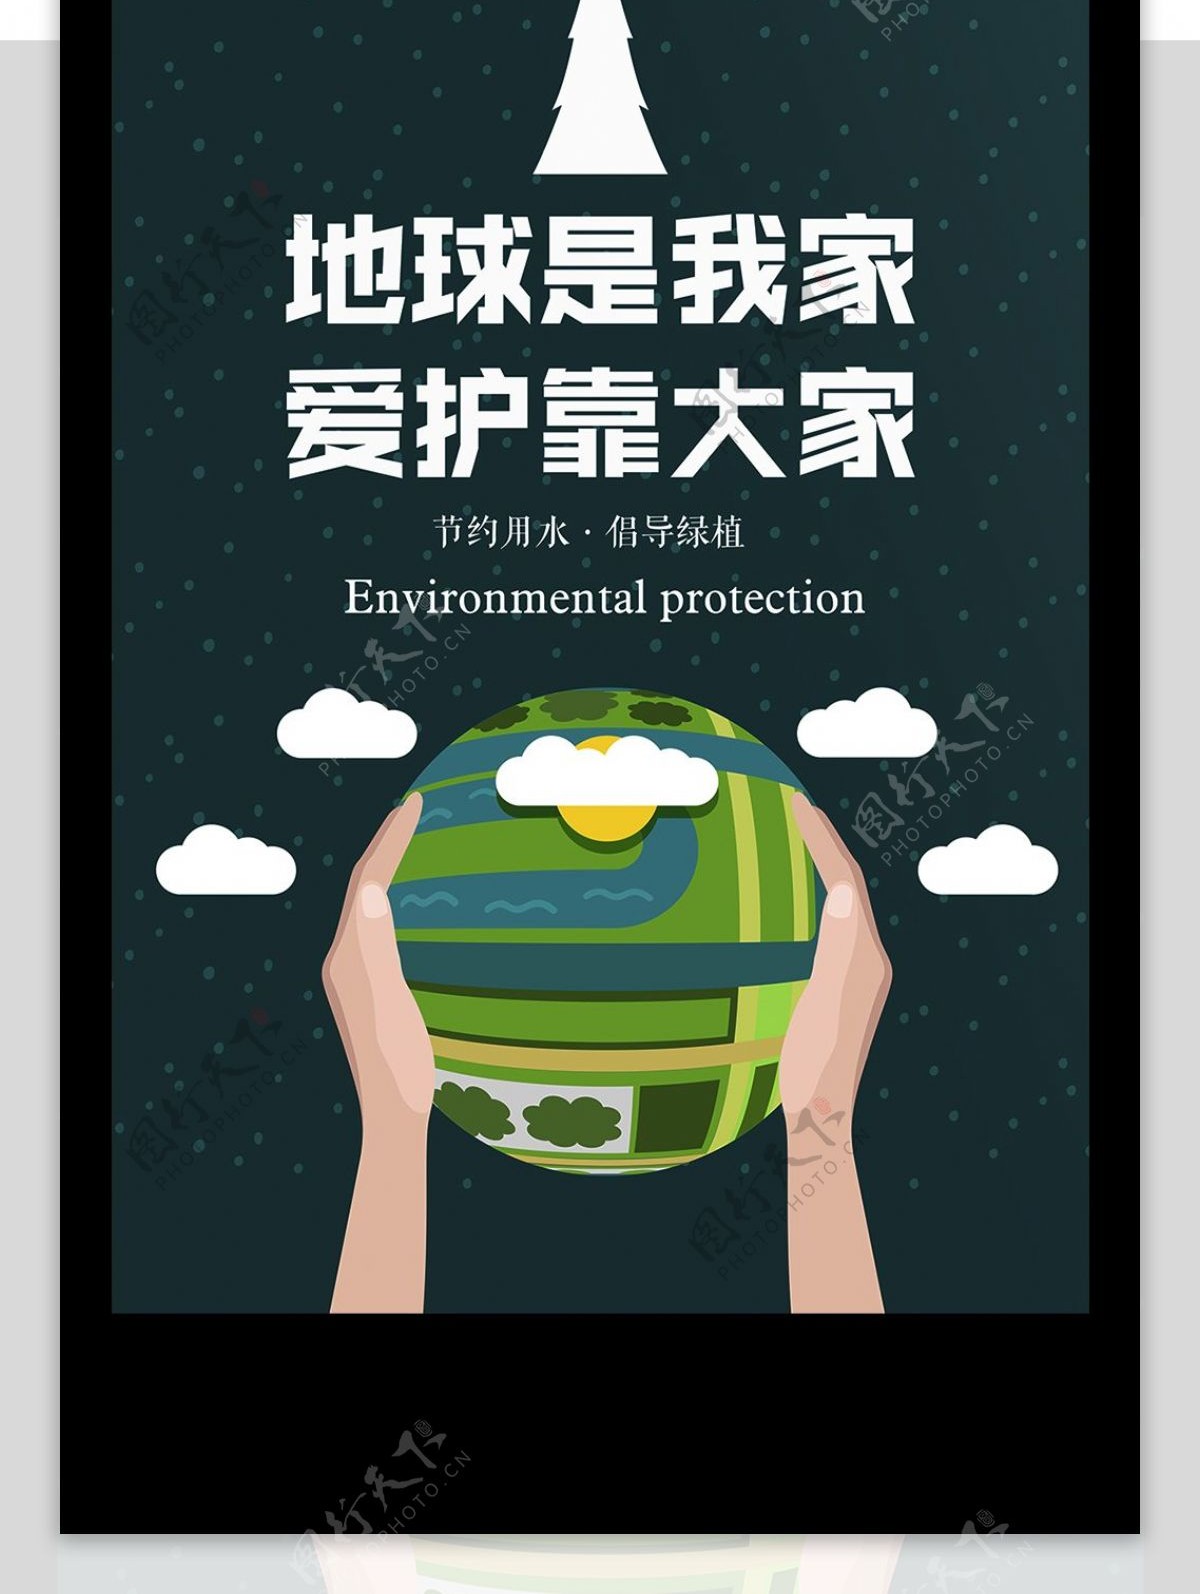 绿色清新爱护地球环保创意公益海报